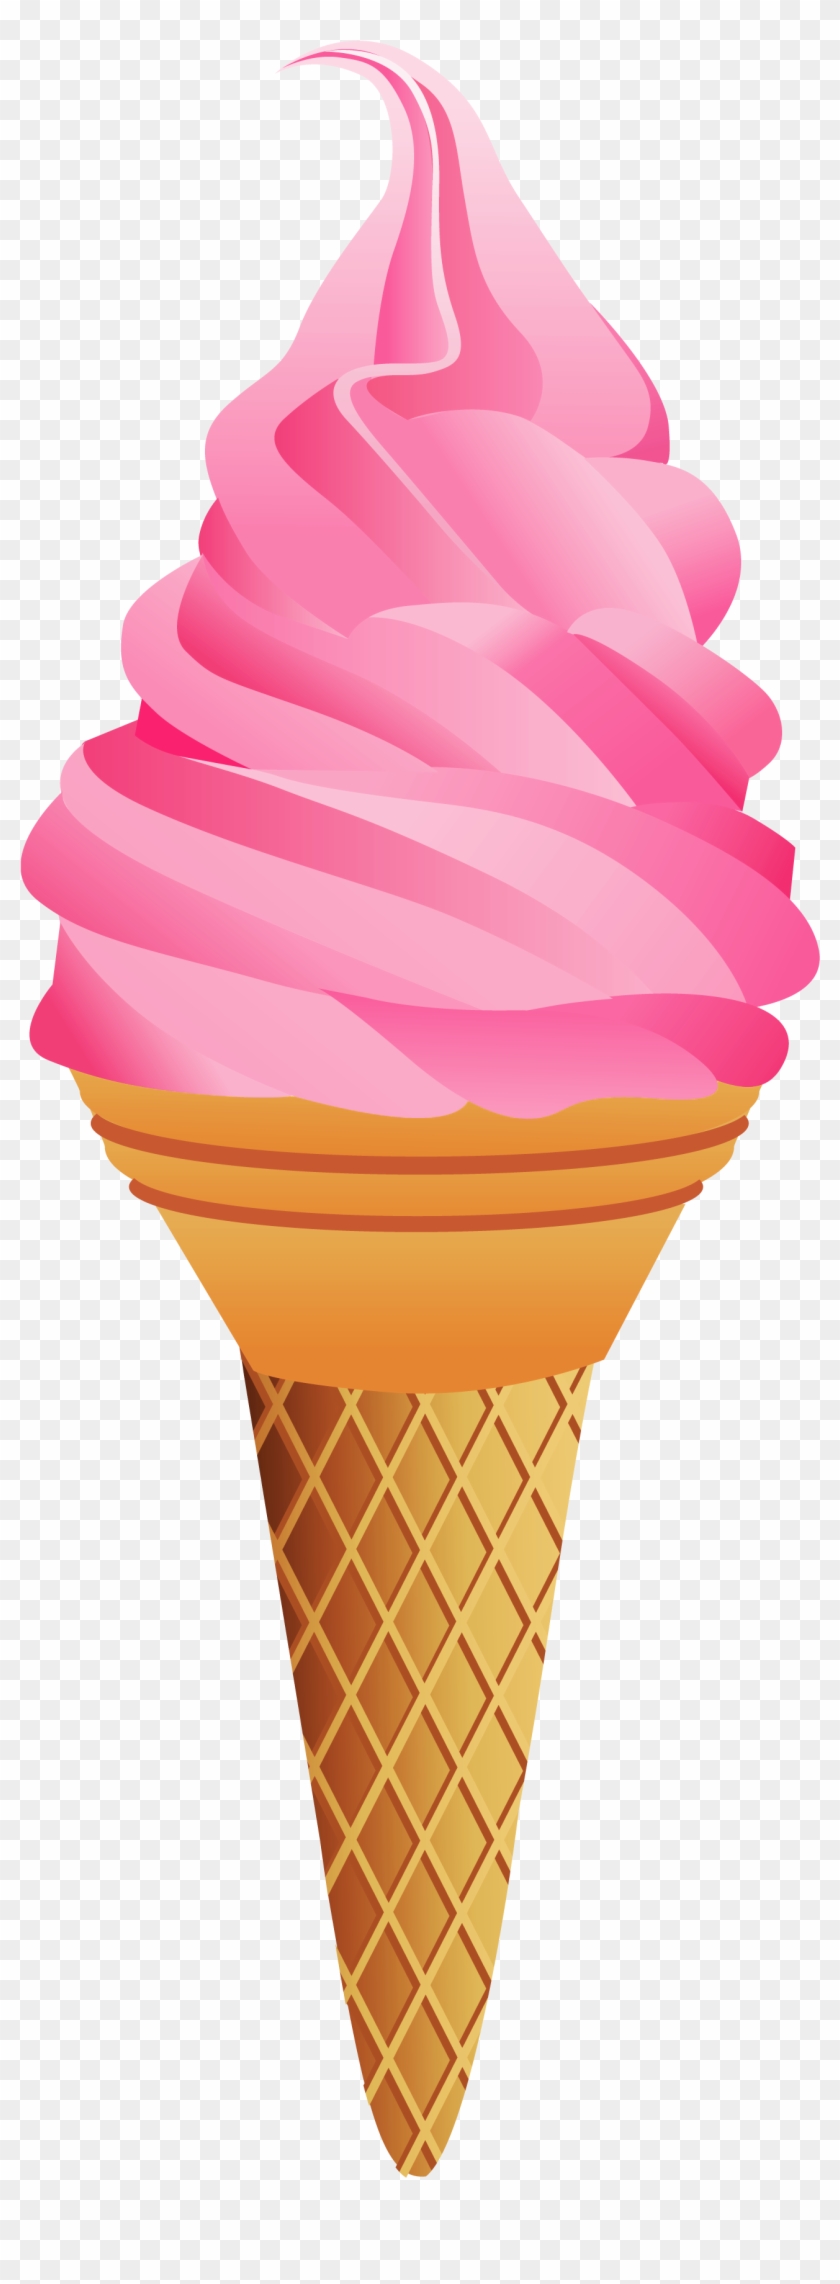 Ice Cream Cone Ice Cream No Cone Clipart - Ice Cream Cone #553831